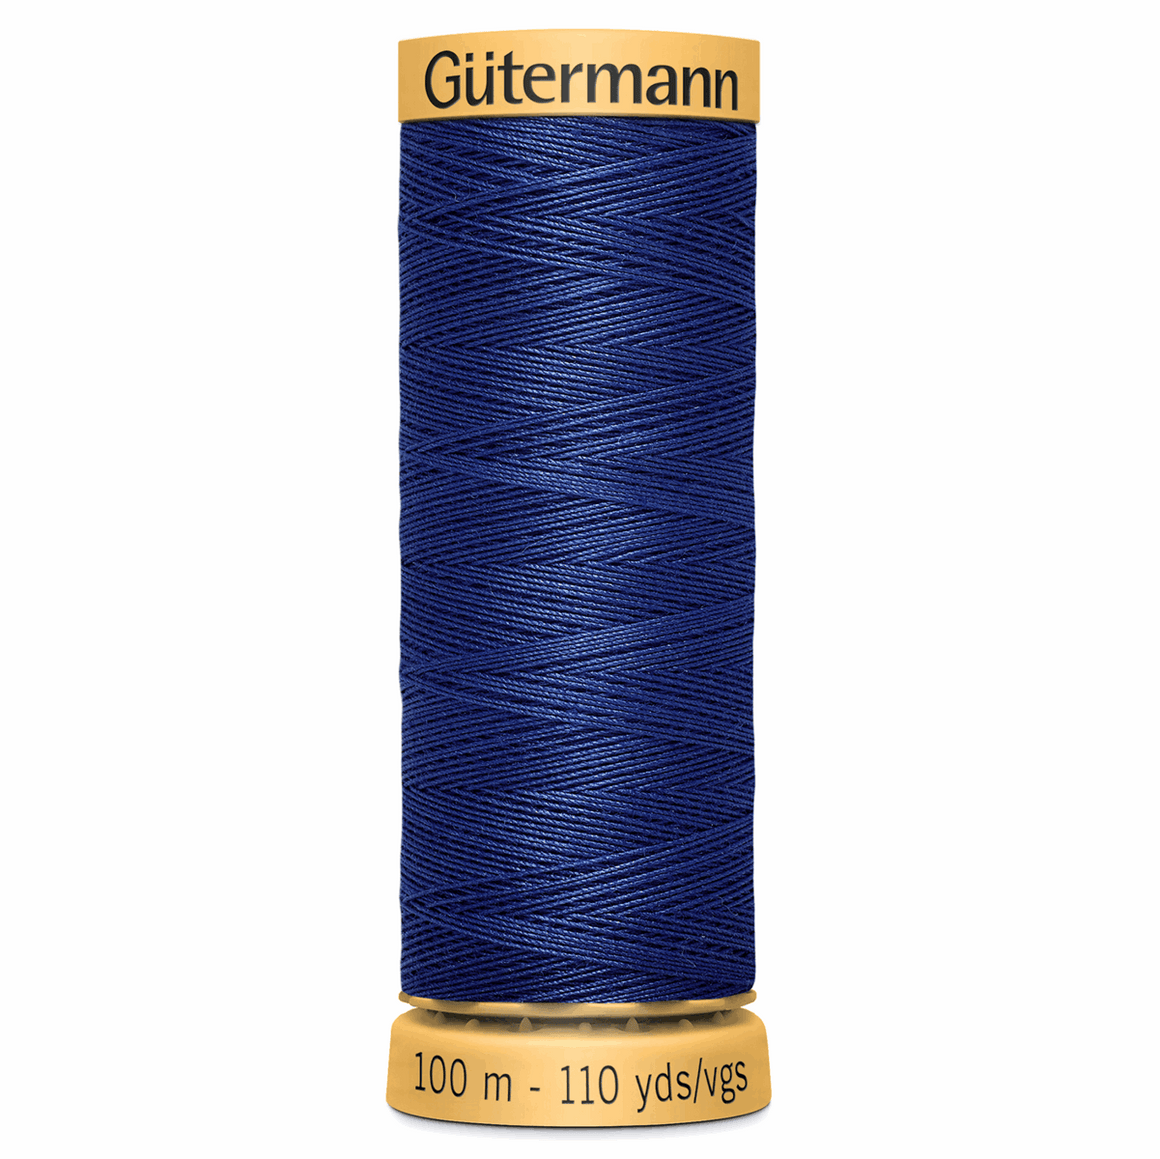 Gutermann Natural Cotton Thread #5123 (navy) 100m / 100% cotton